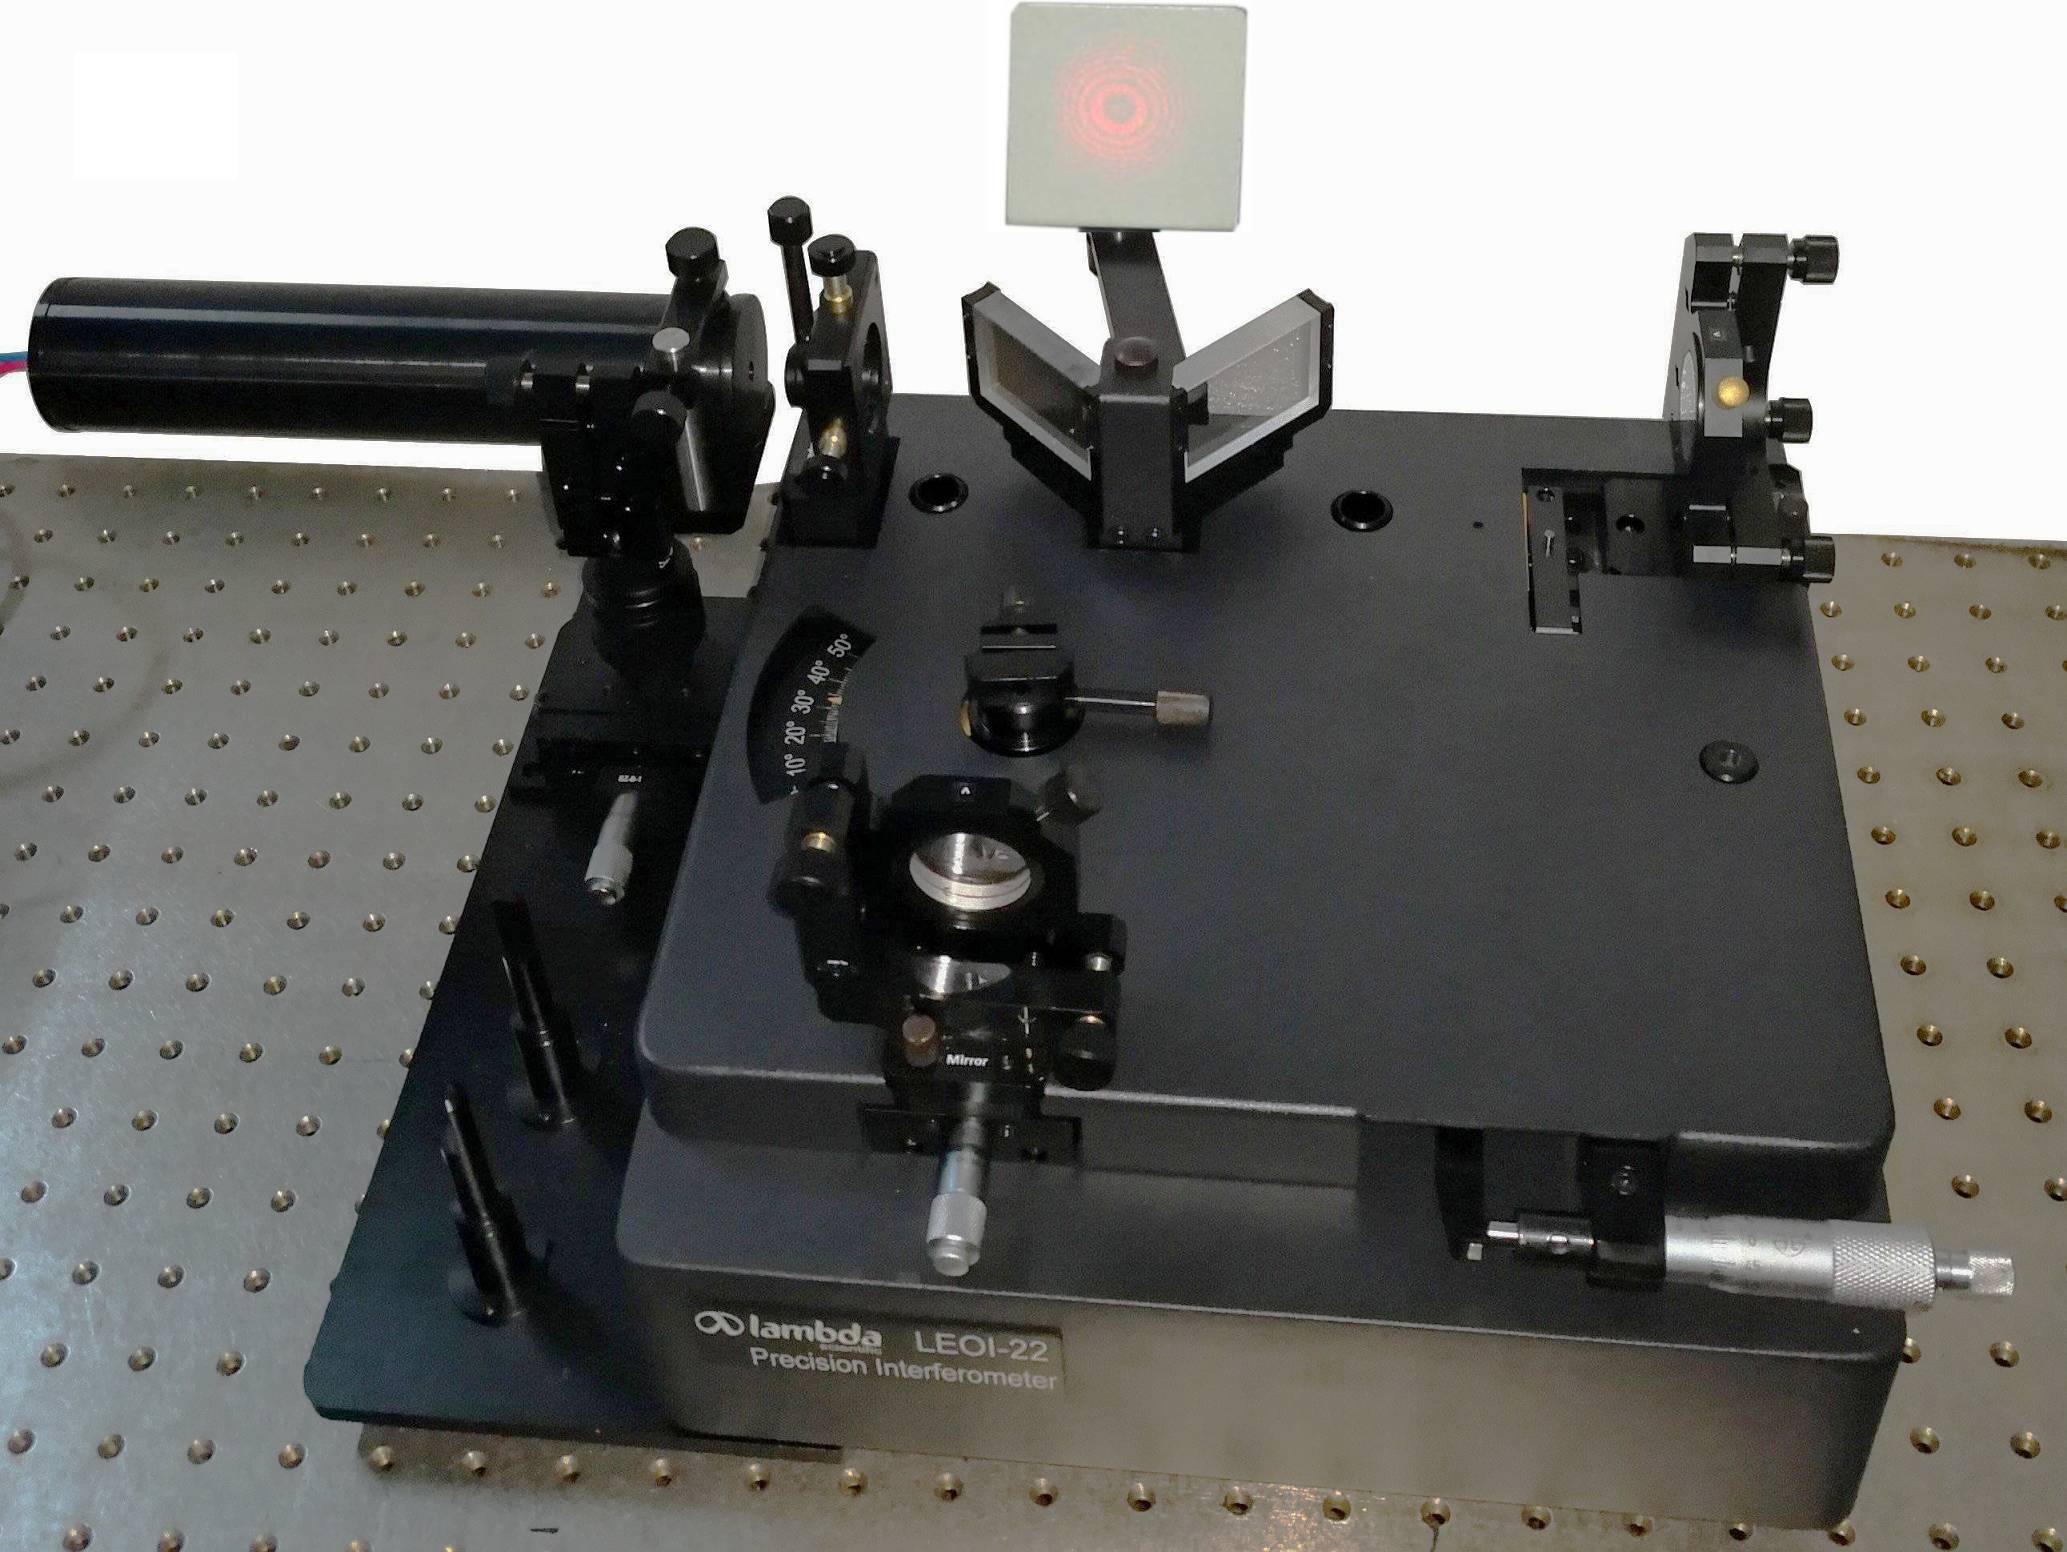 LEOI-22 Precision Interferometer